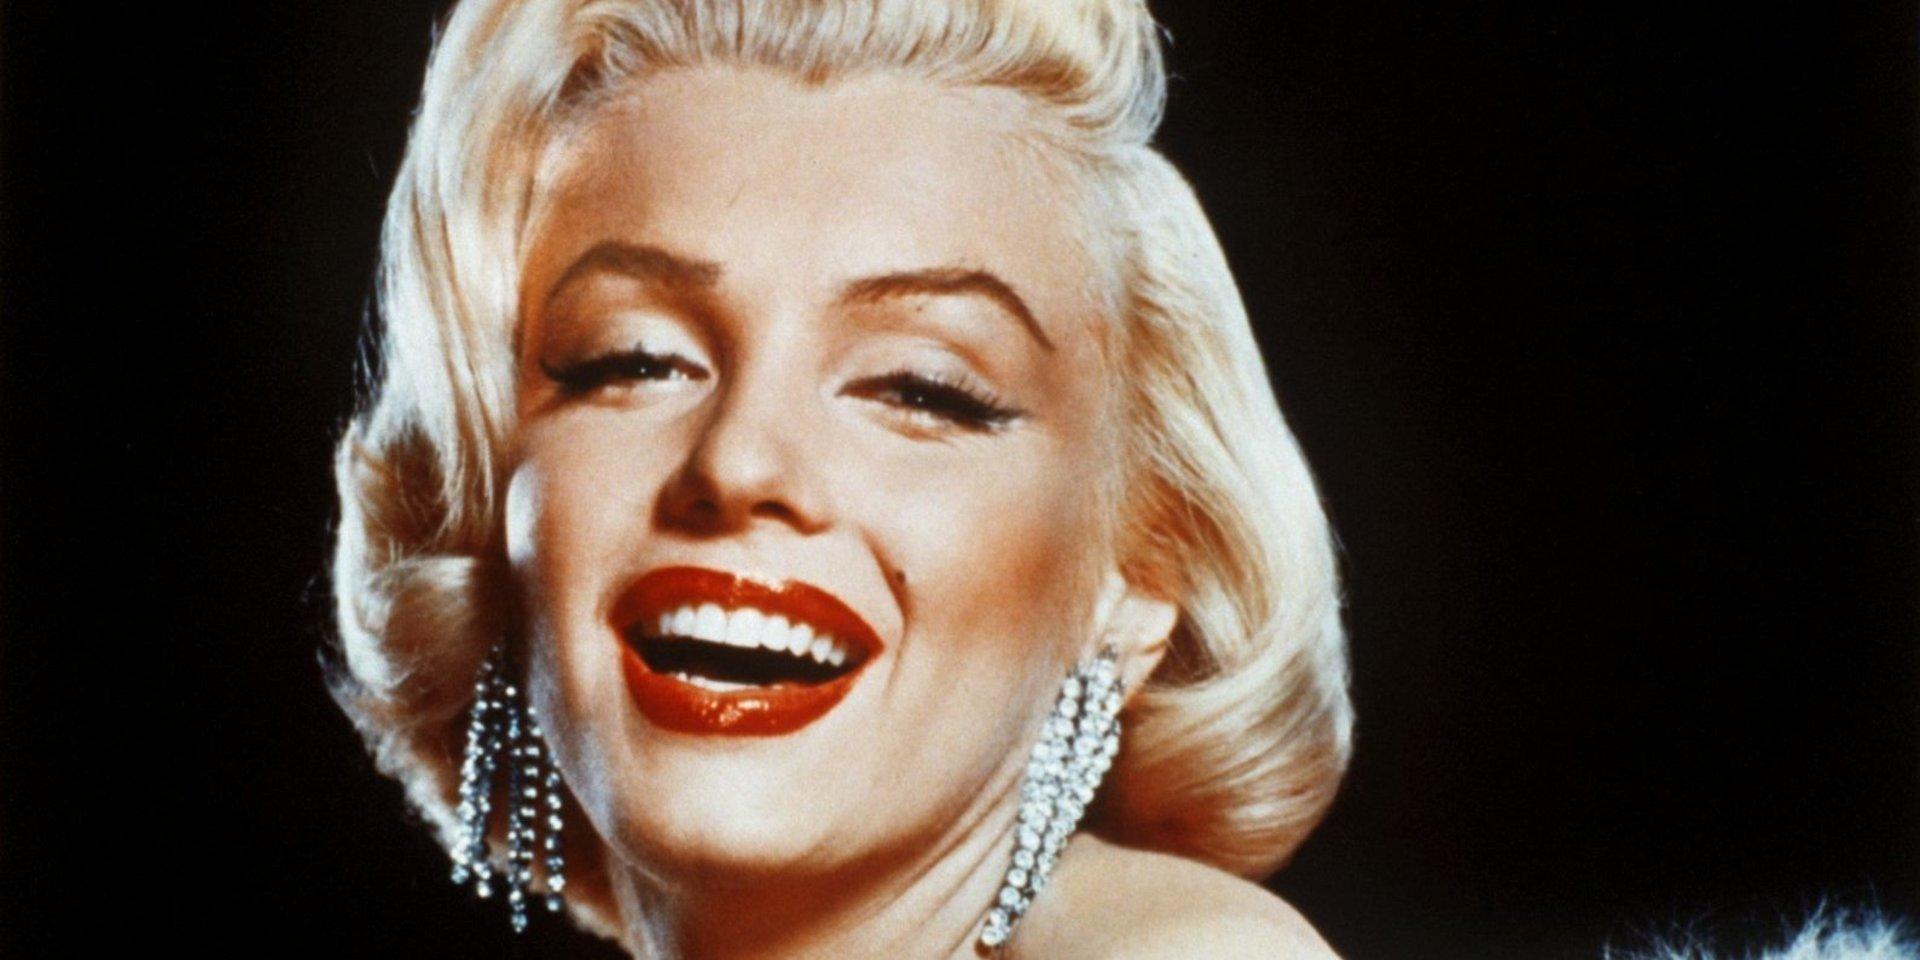 Blir jag snyggare om jag sätter på mig en namnbricka där det står Marilyn Monroe?